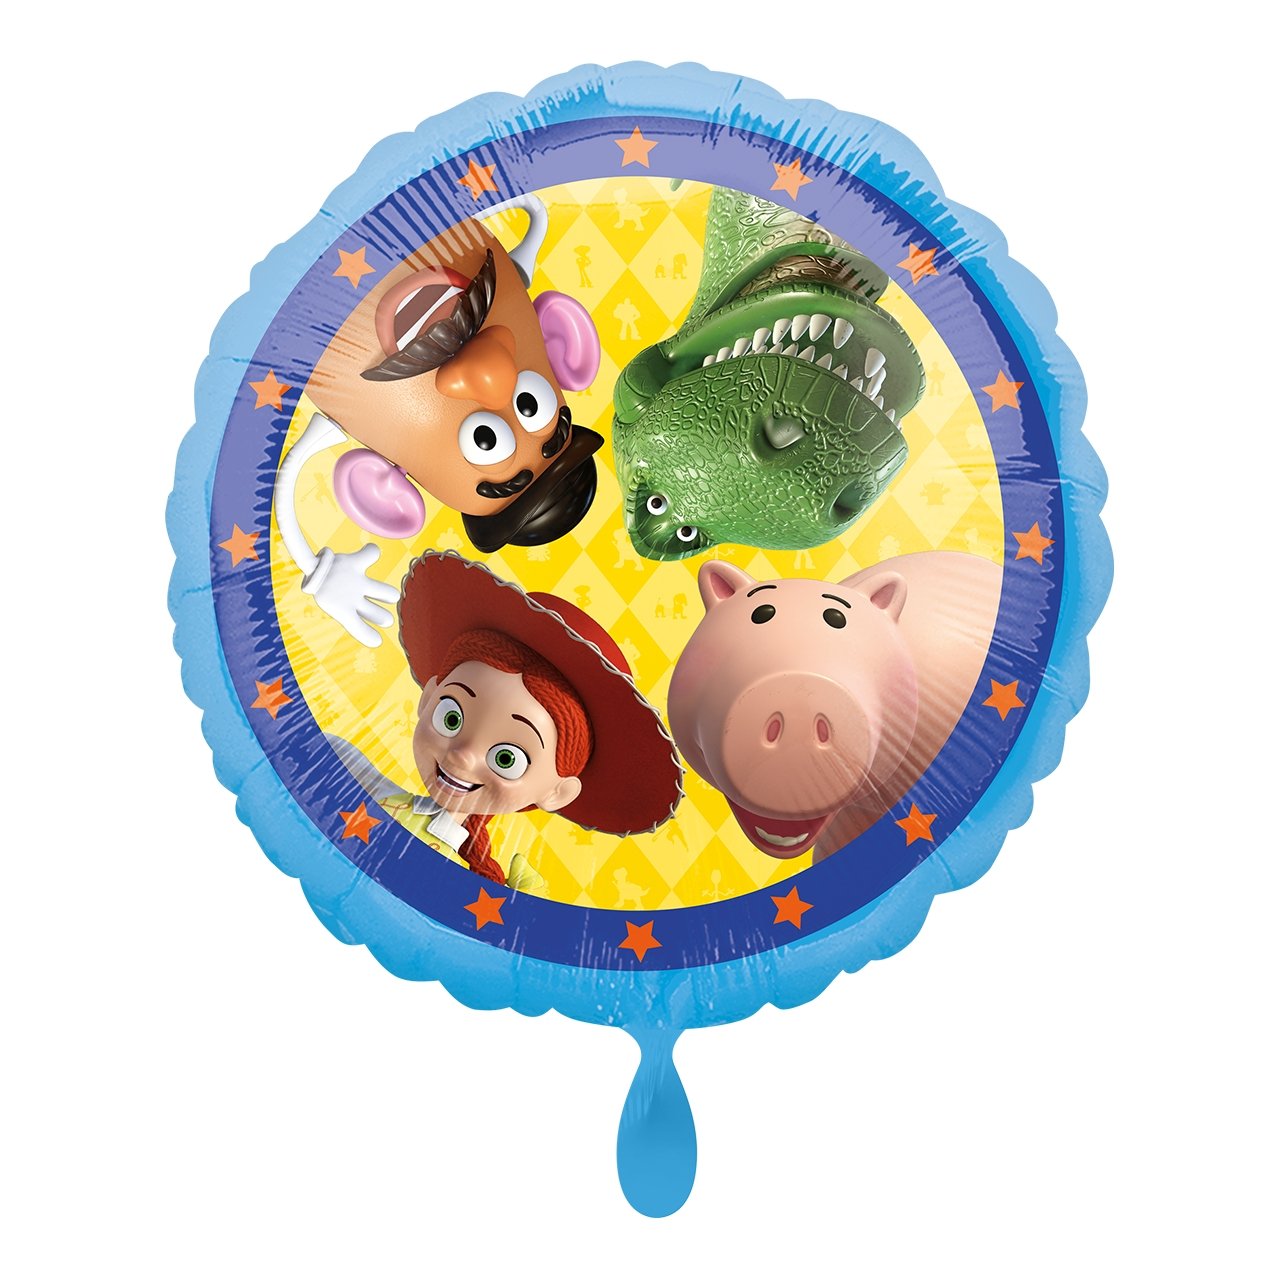 Folienballon "Toy Story" 43cm - Party im Karton